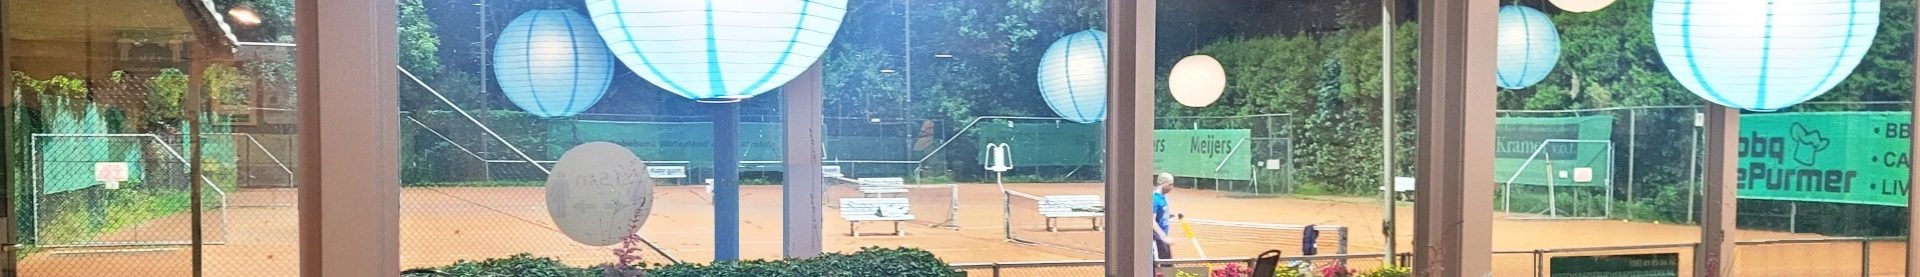 header-tennisschool-tennislessen